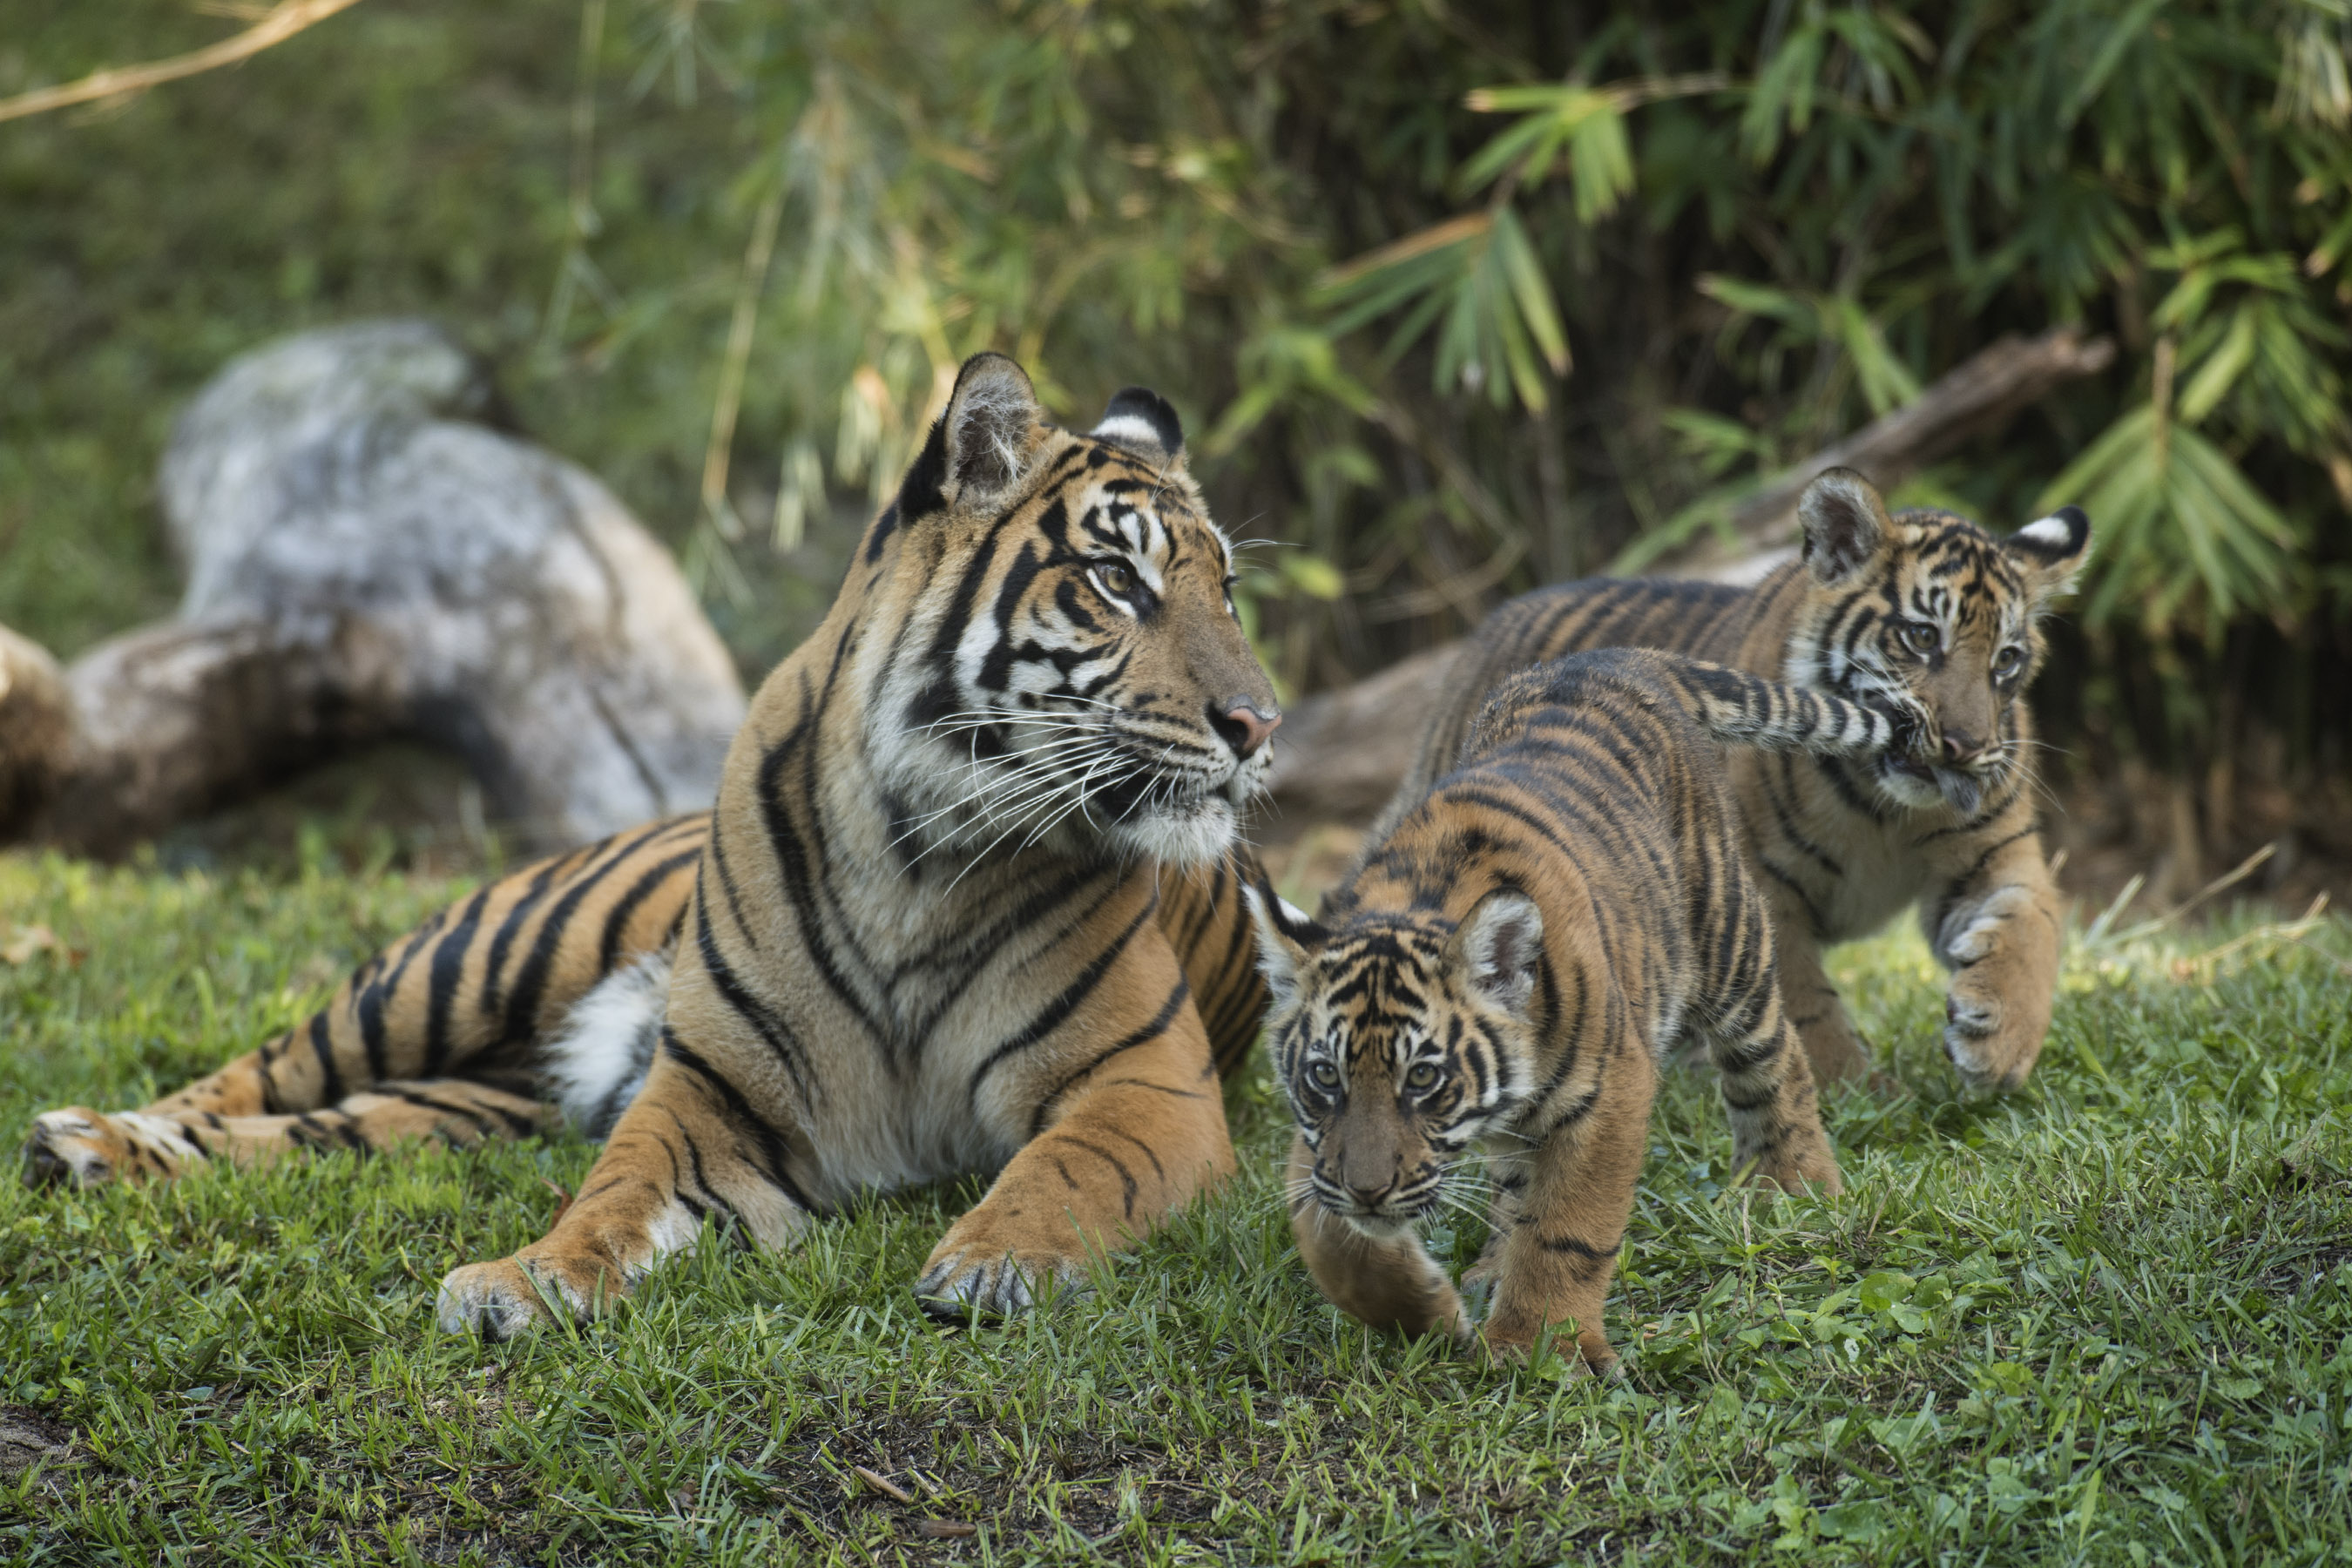 Mama and baby tiger